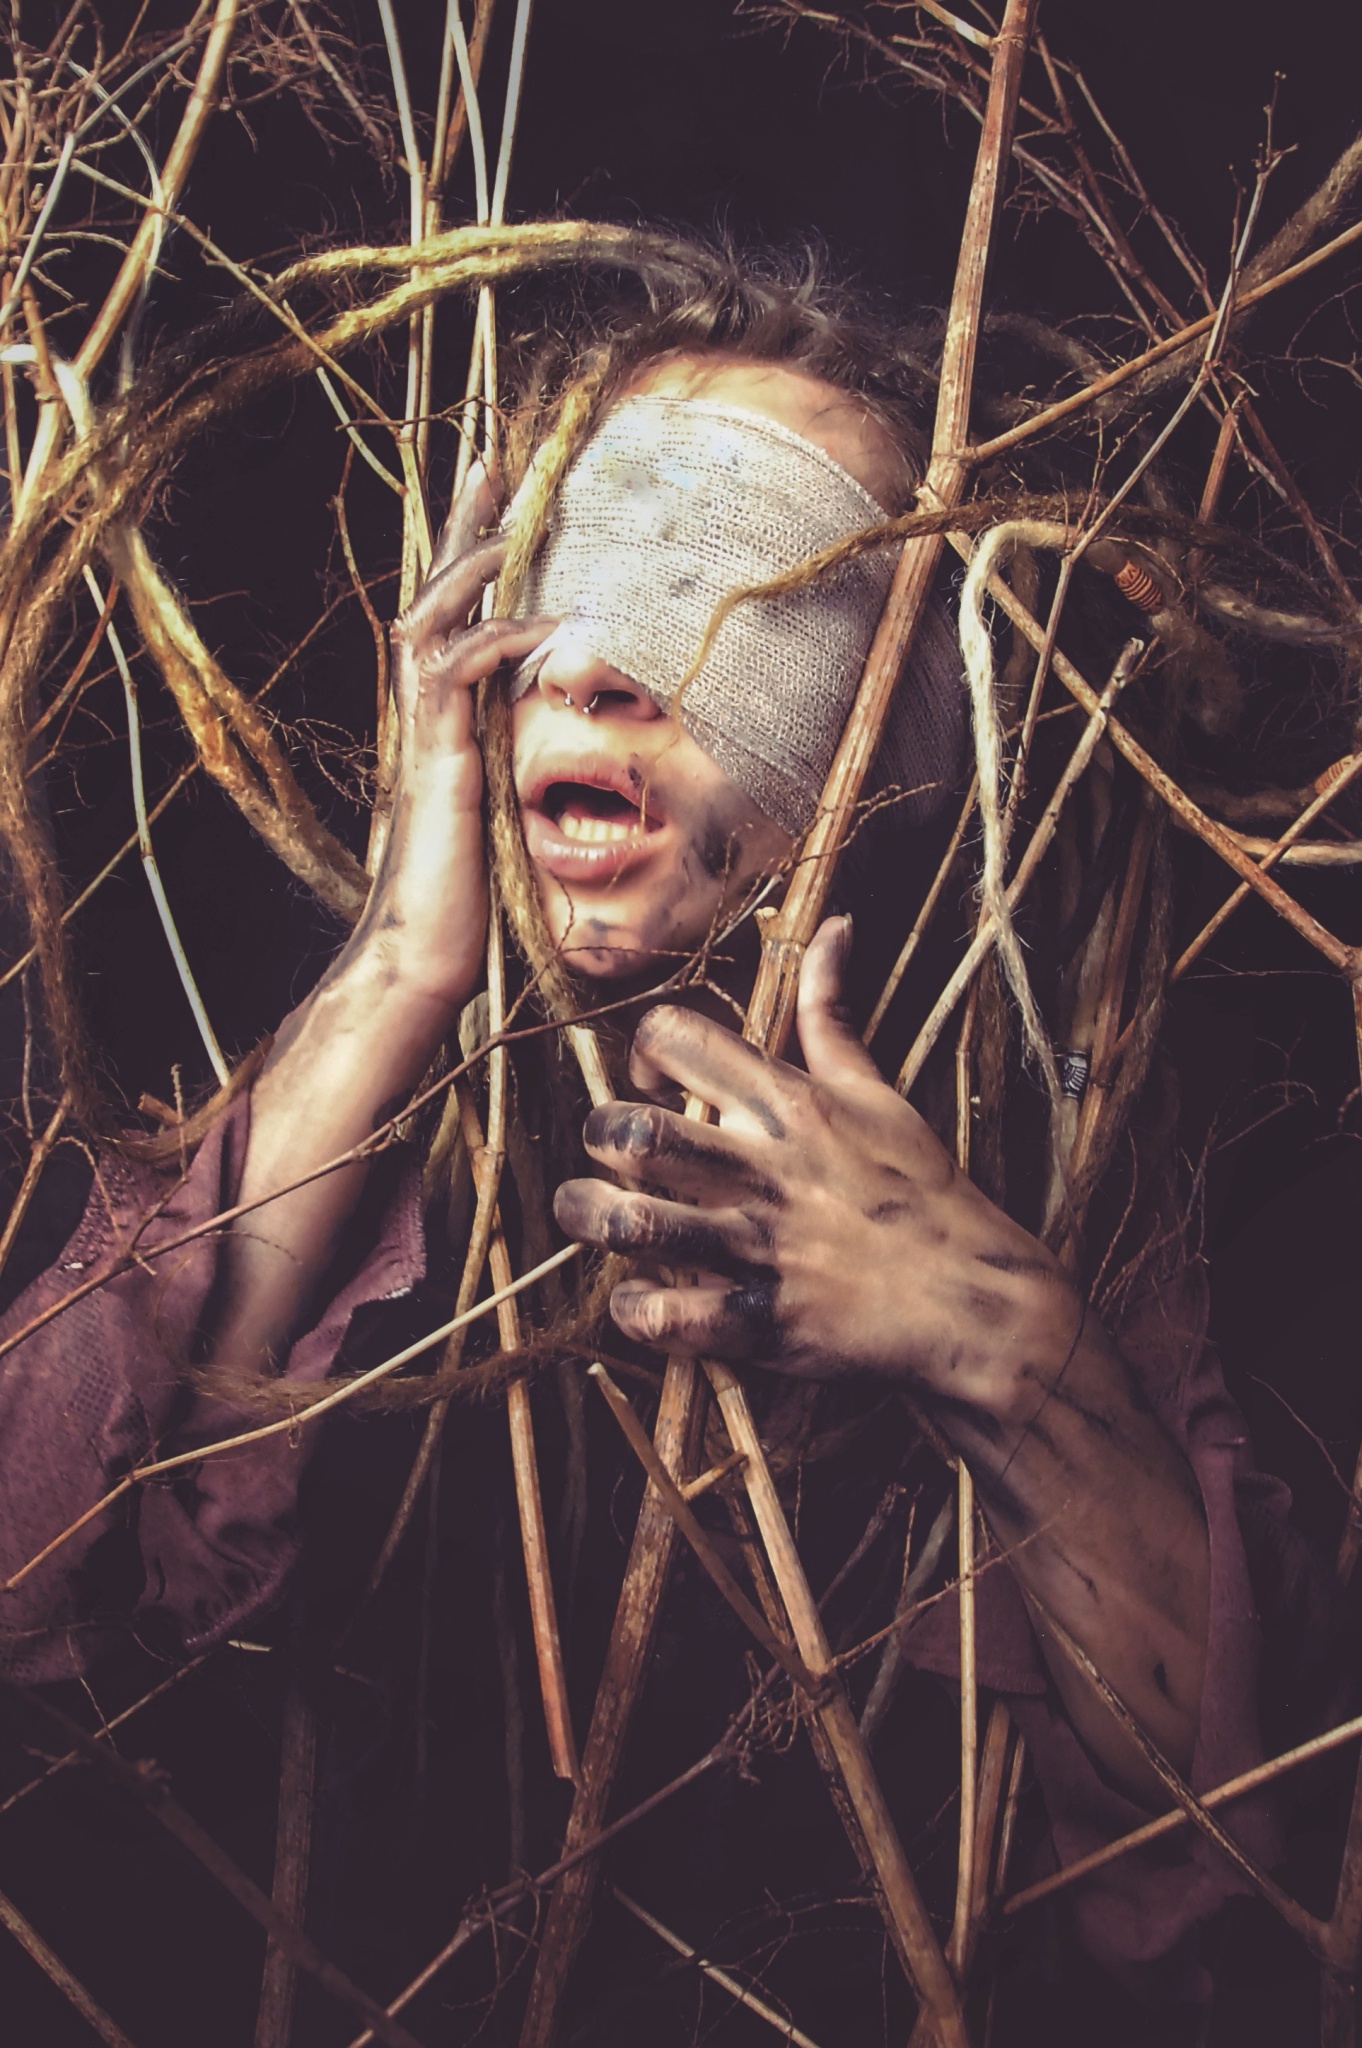 Horrorfotograf Peter Murin: Eine Maske ist inkognito und mysteriös. Ich kreiere einen Look genau so, wie ich ihn haben möchte.